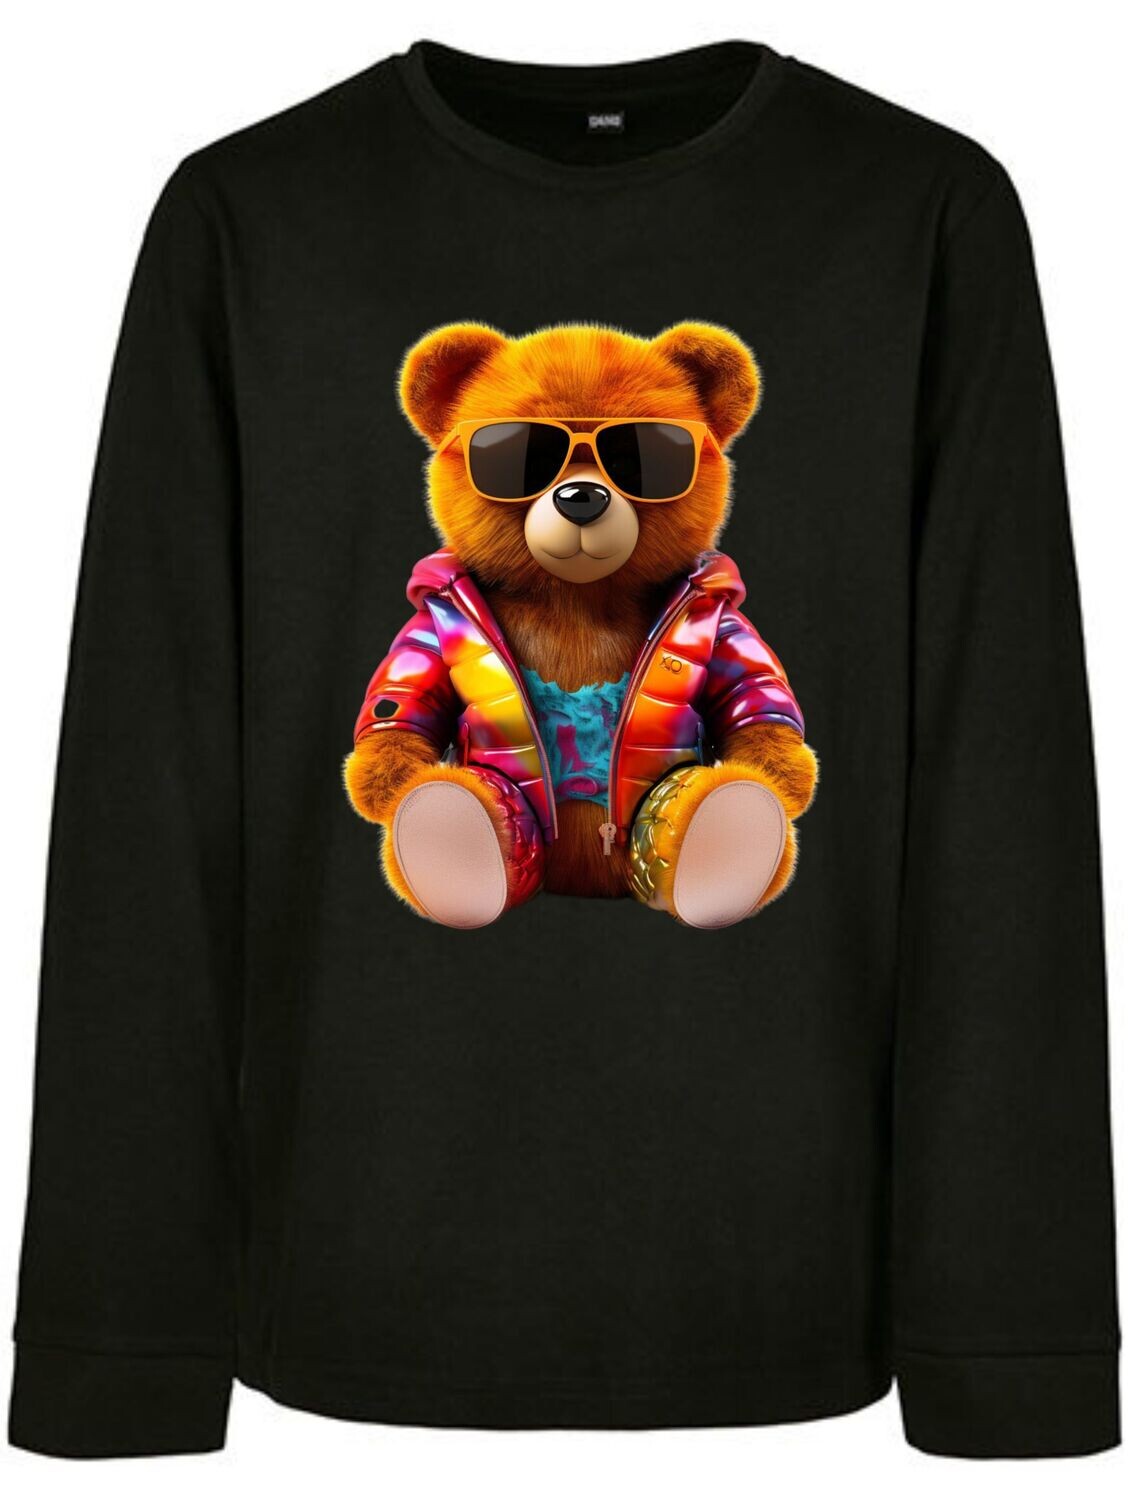 Sweatshirt Teddy Colorful 4